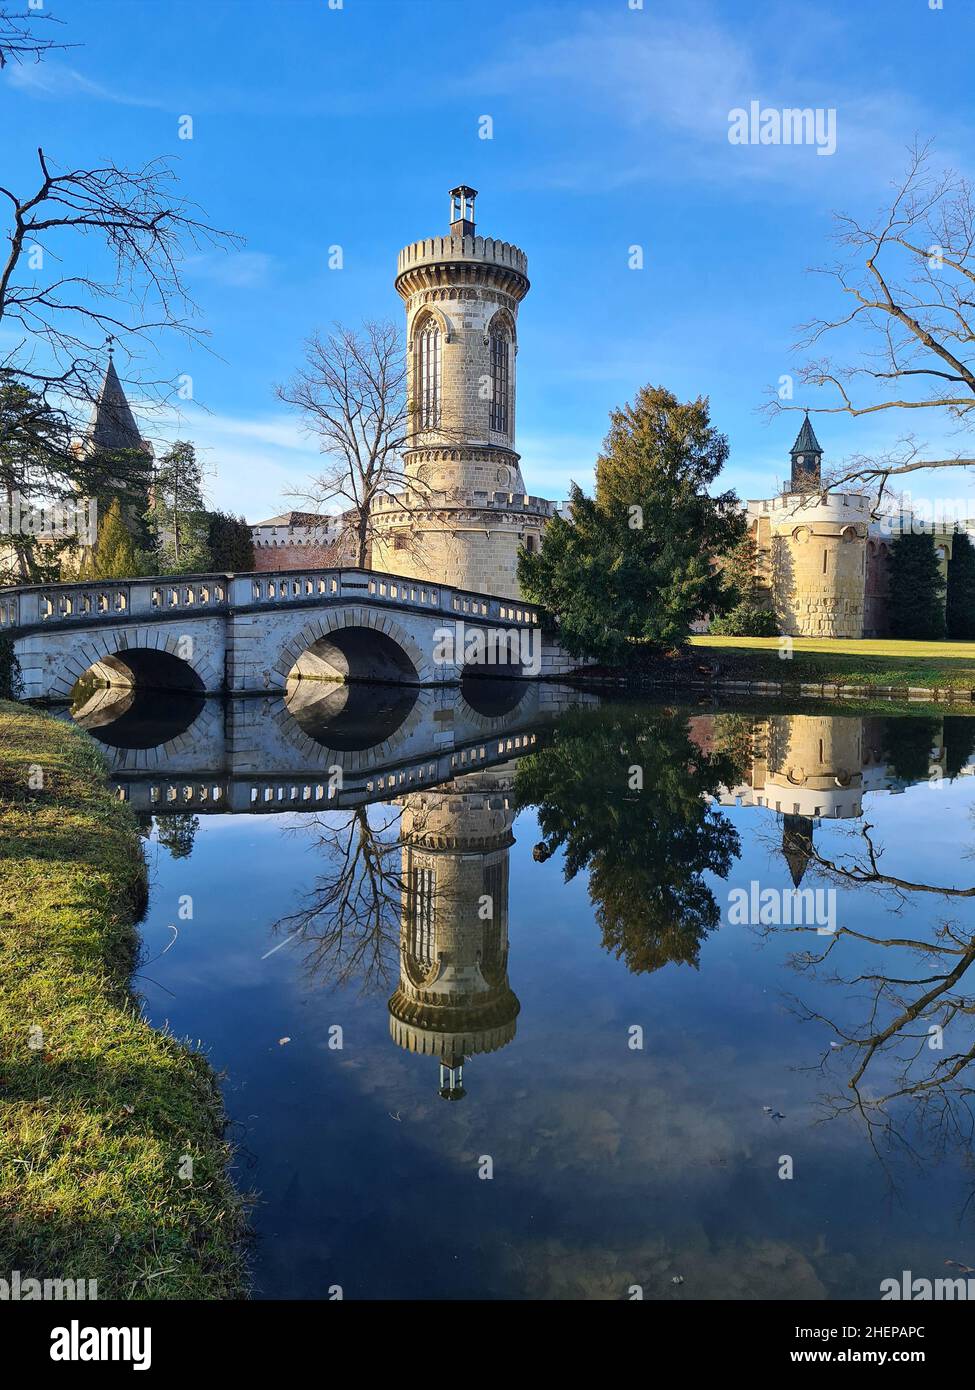 Laxenburg, Austria - January 02, 2022: Franzensburg Castle and stone bridge in public castle park, a preferred destination and film location near Vien Stock Photo